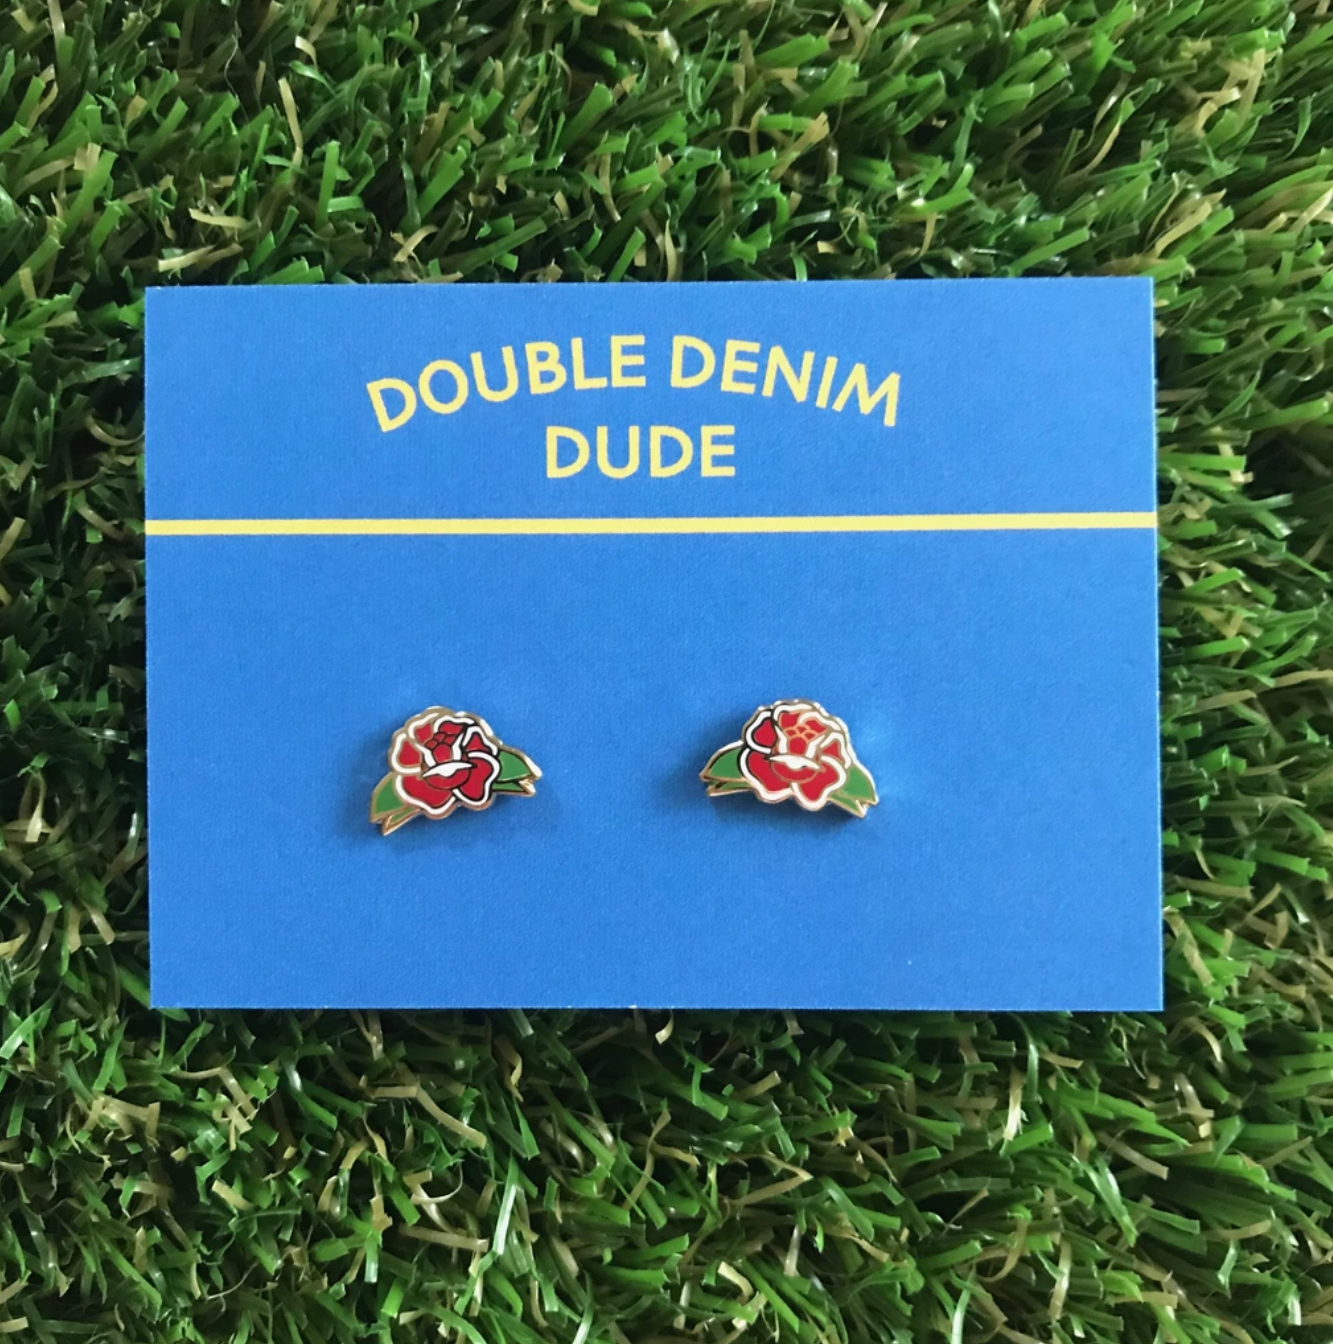 Double Denim Dude: Earrings